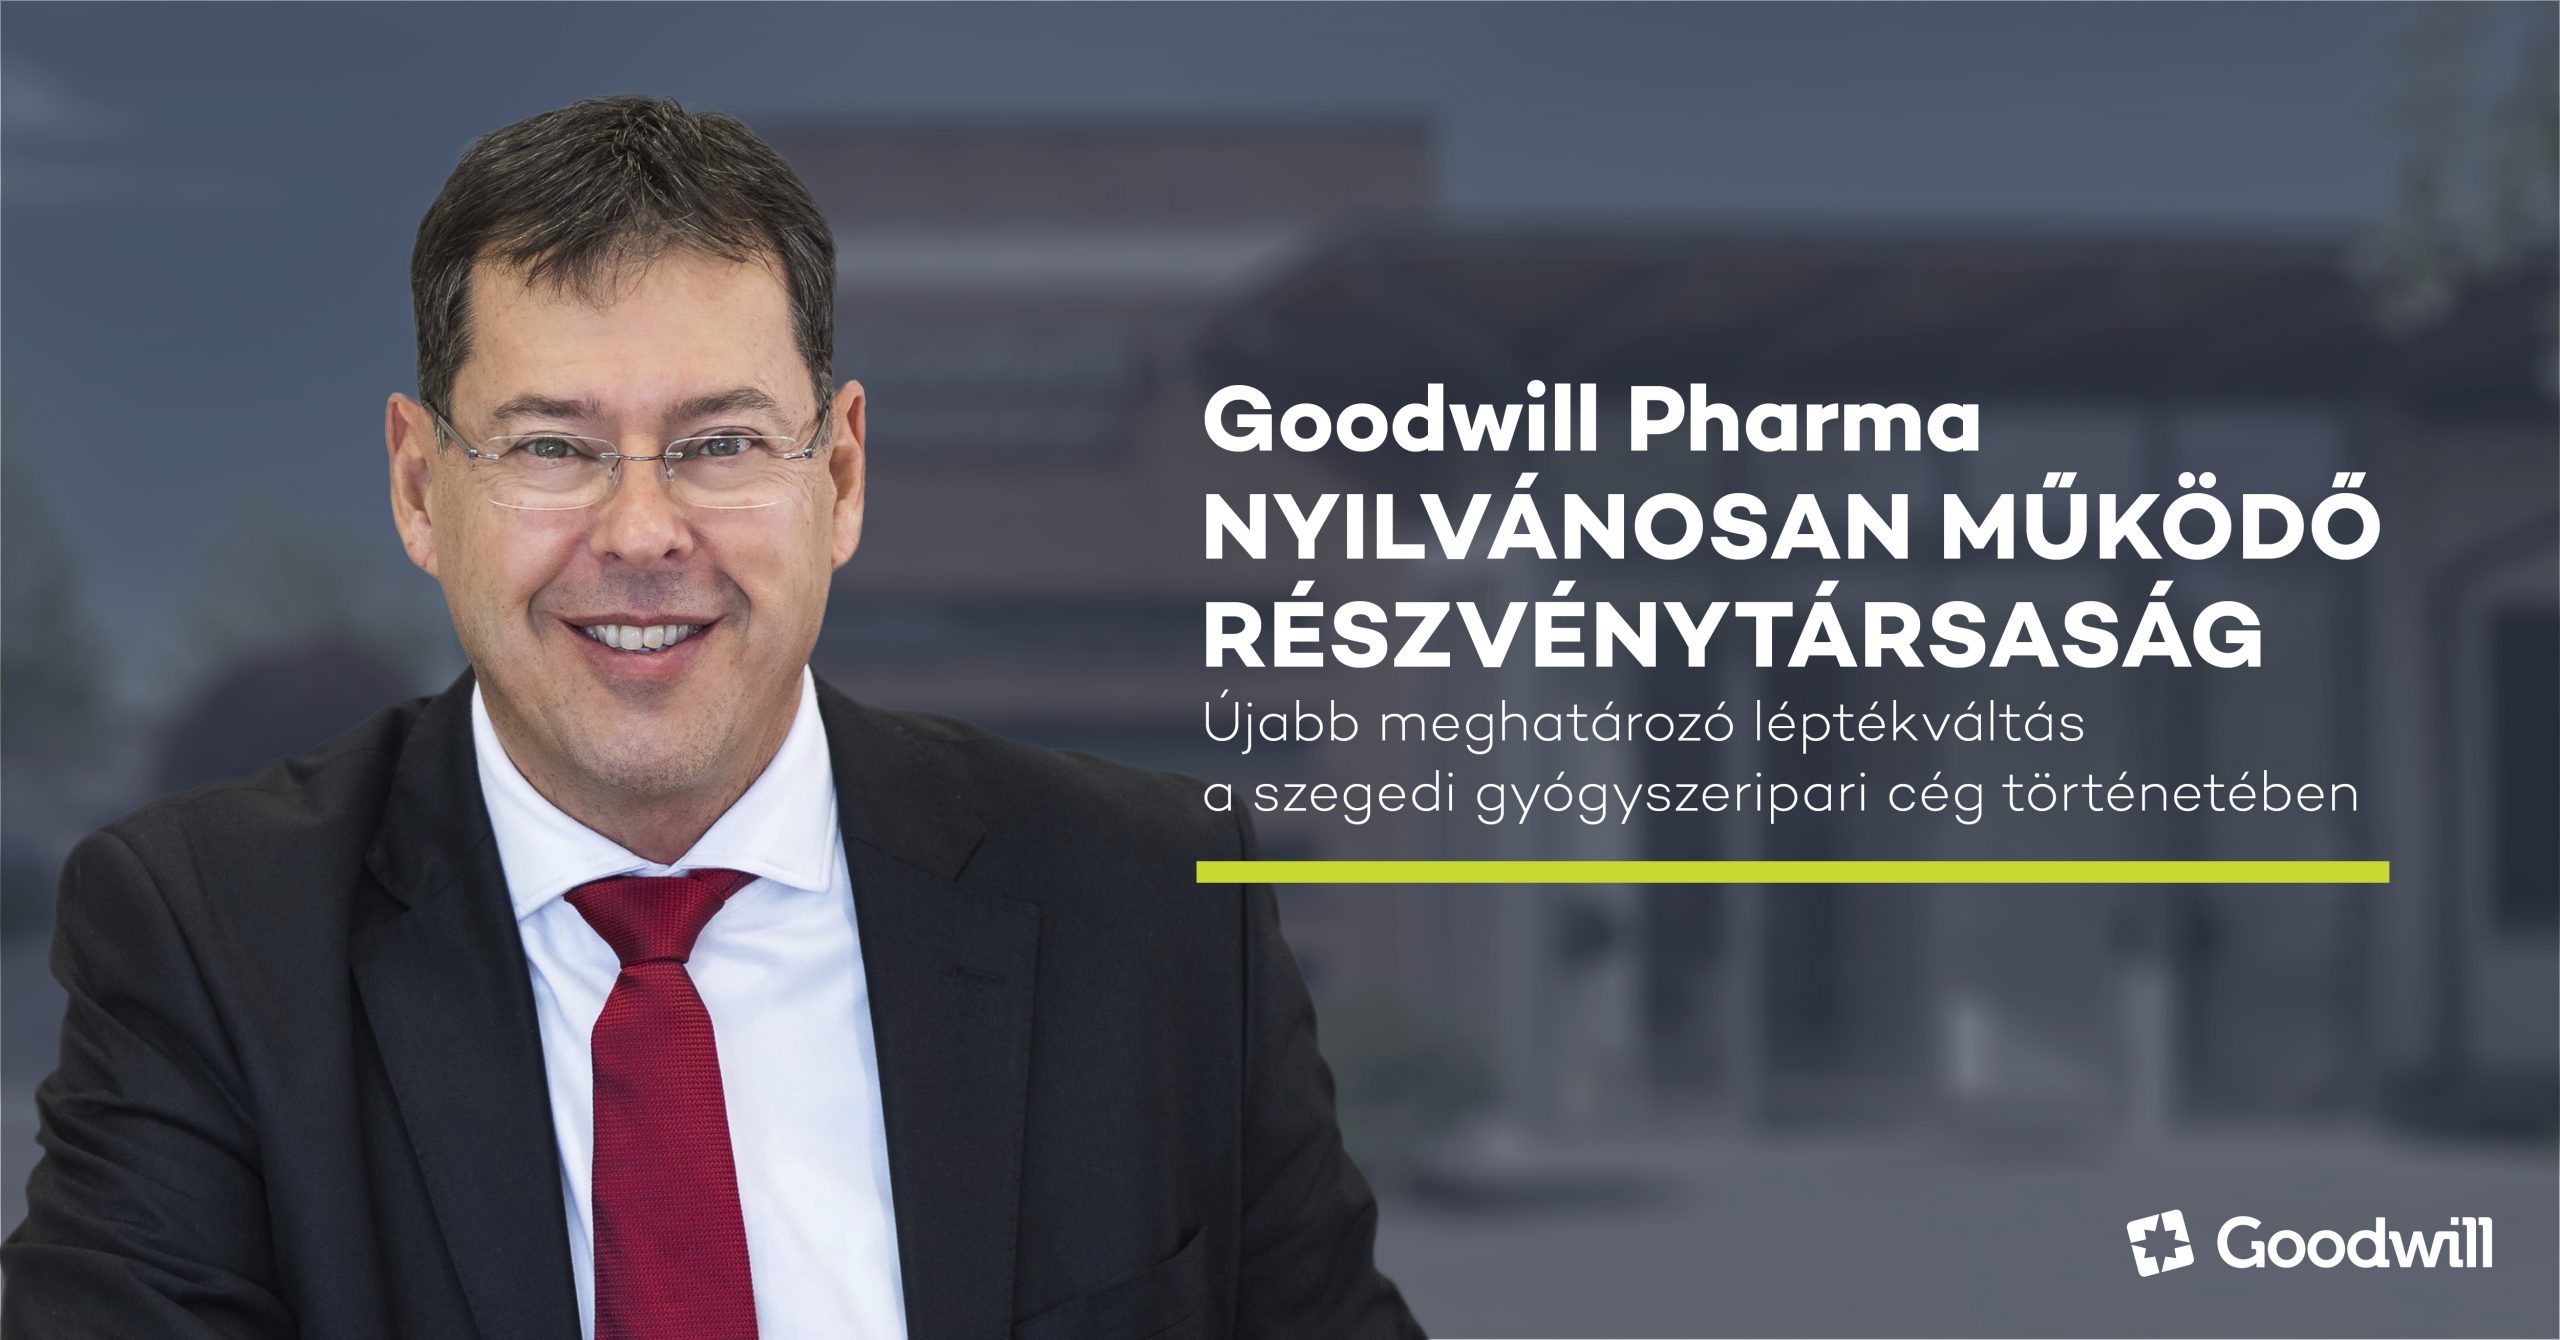 Goodwill Pharma nyilvánosan működő részvénytársaság – újabb meghatározó léptékváltás a szegedi gyógyszeripari cég történetében